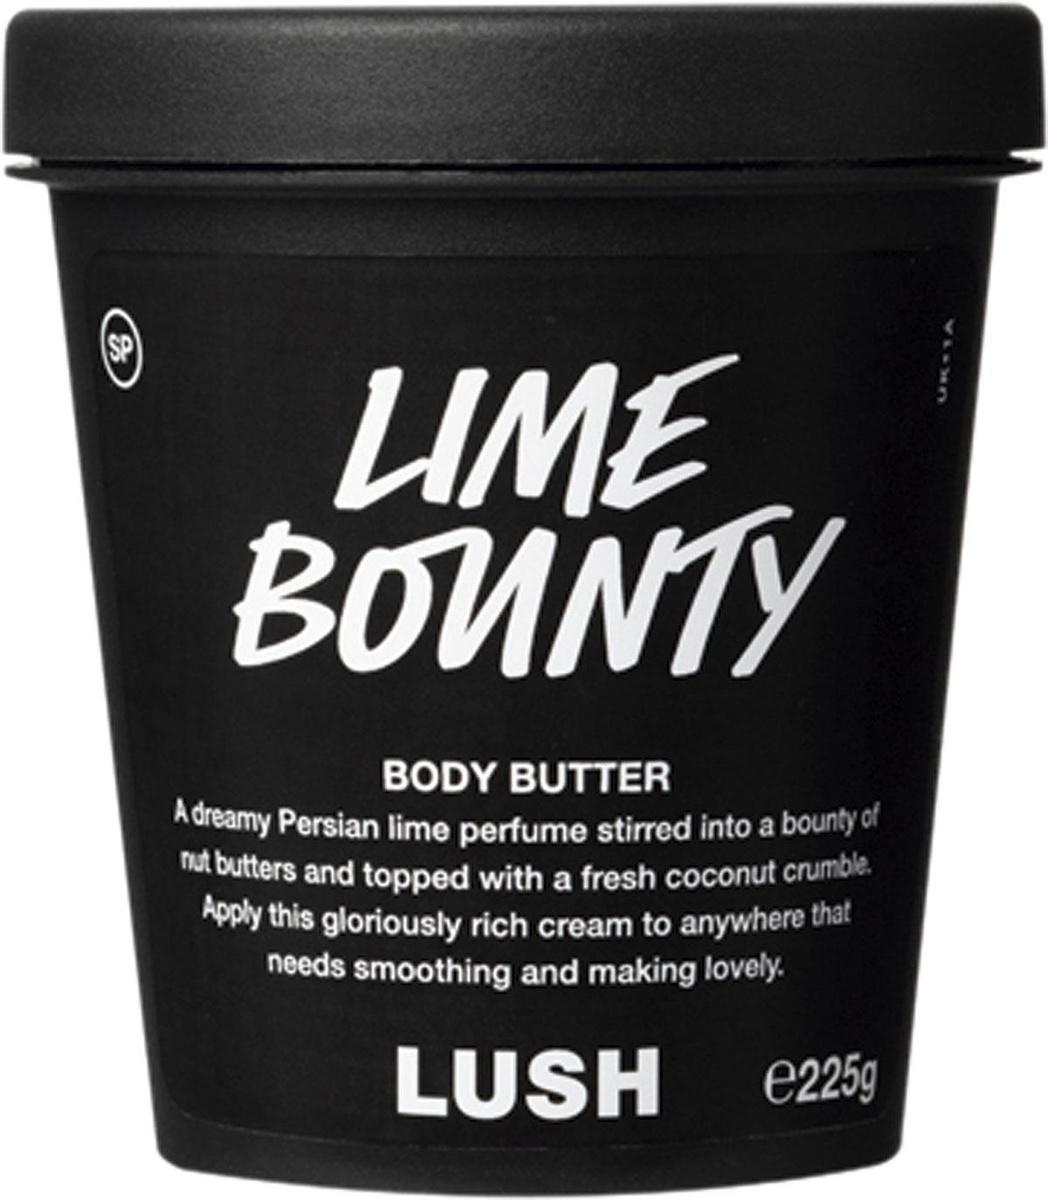 Body butter 'Lime Bounty' op basis van kokosolie en limoen (13 euro voor 100 g), lush.com